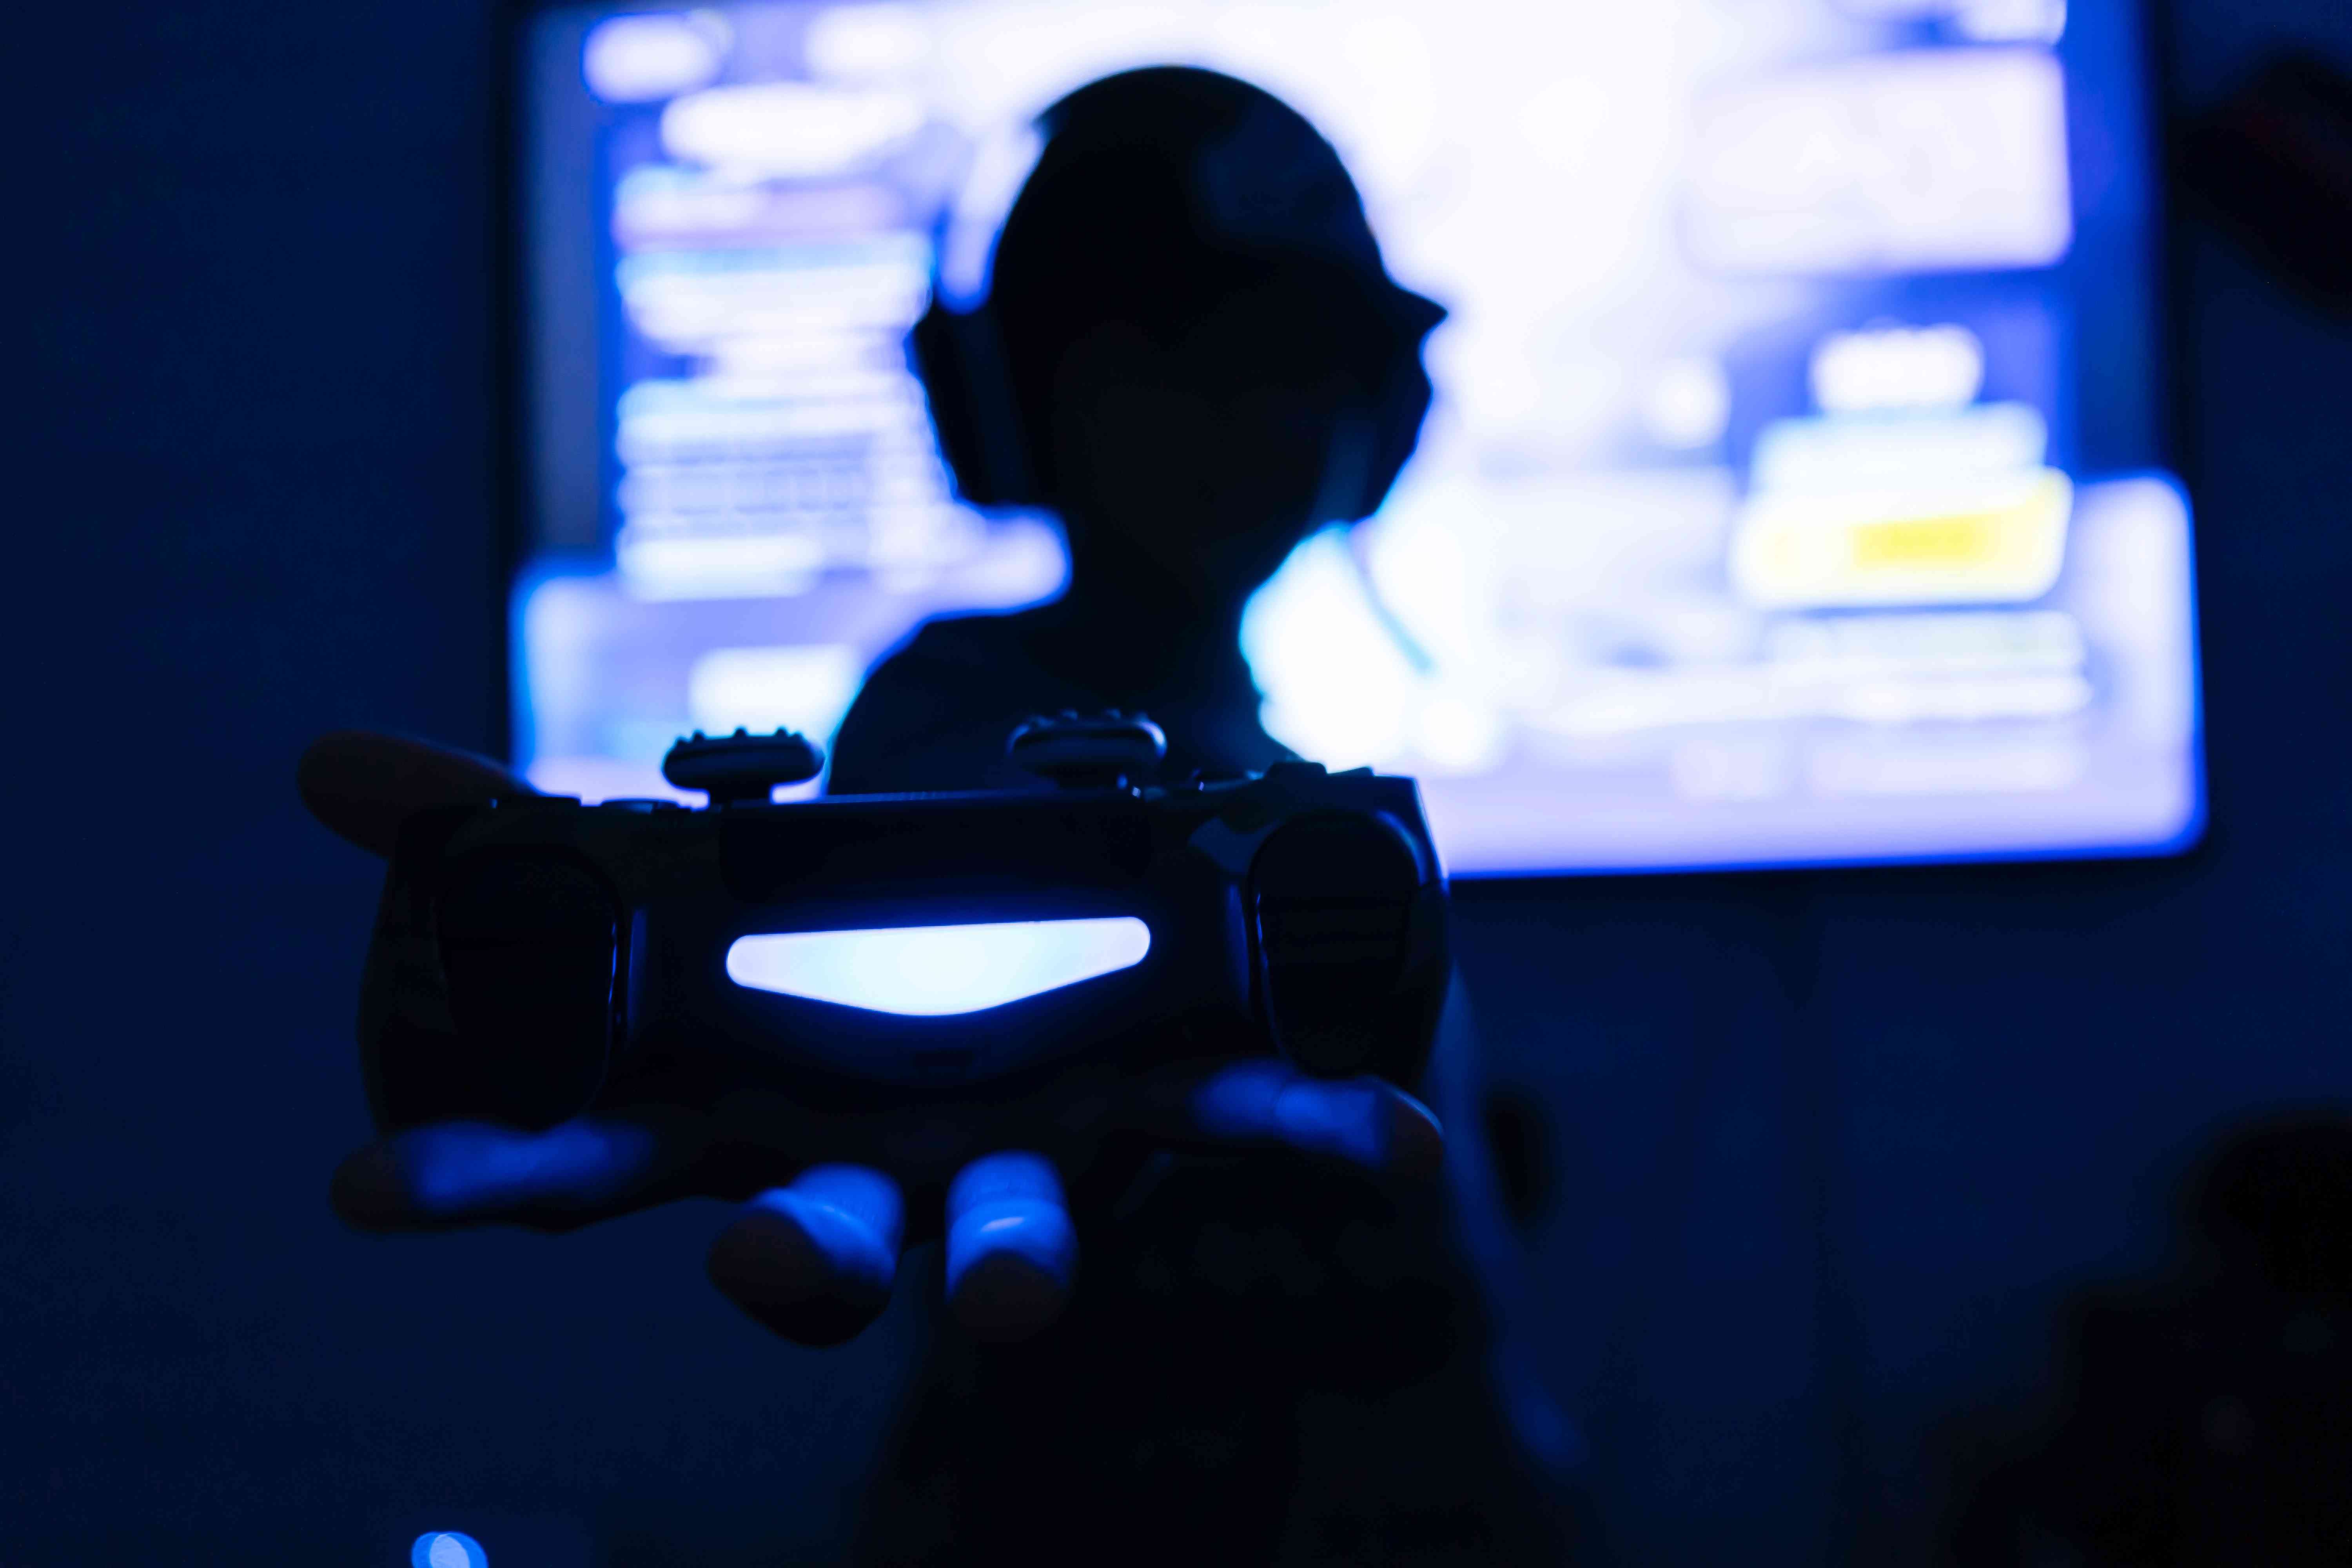 Silhouet van een gaming-streaming die een gamecontroller vasthoudt met een game op het scherm erachter.